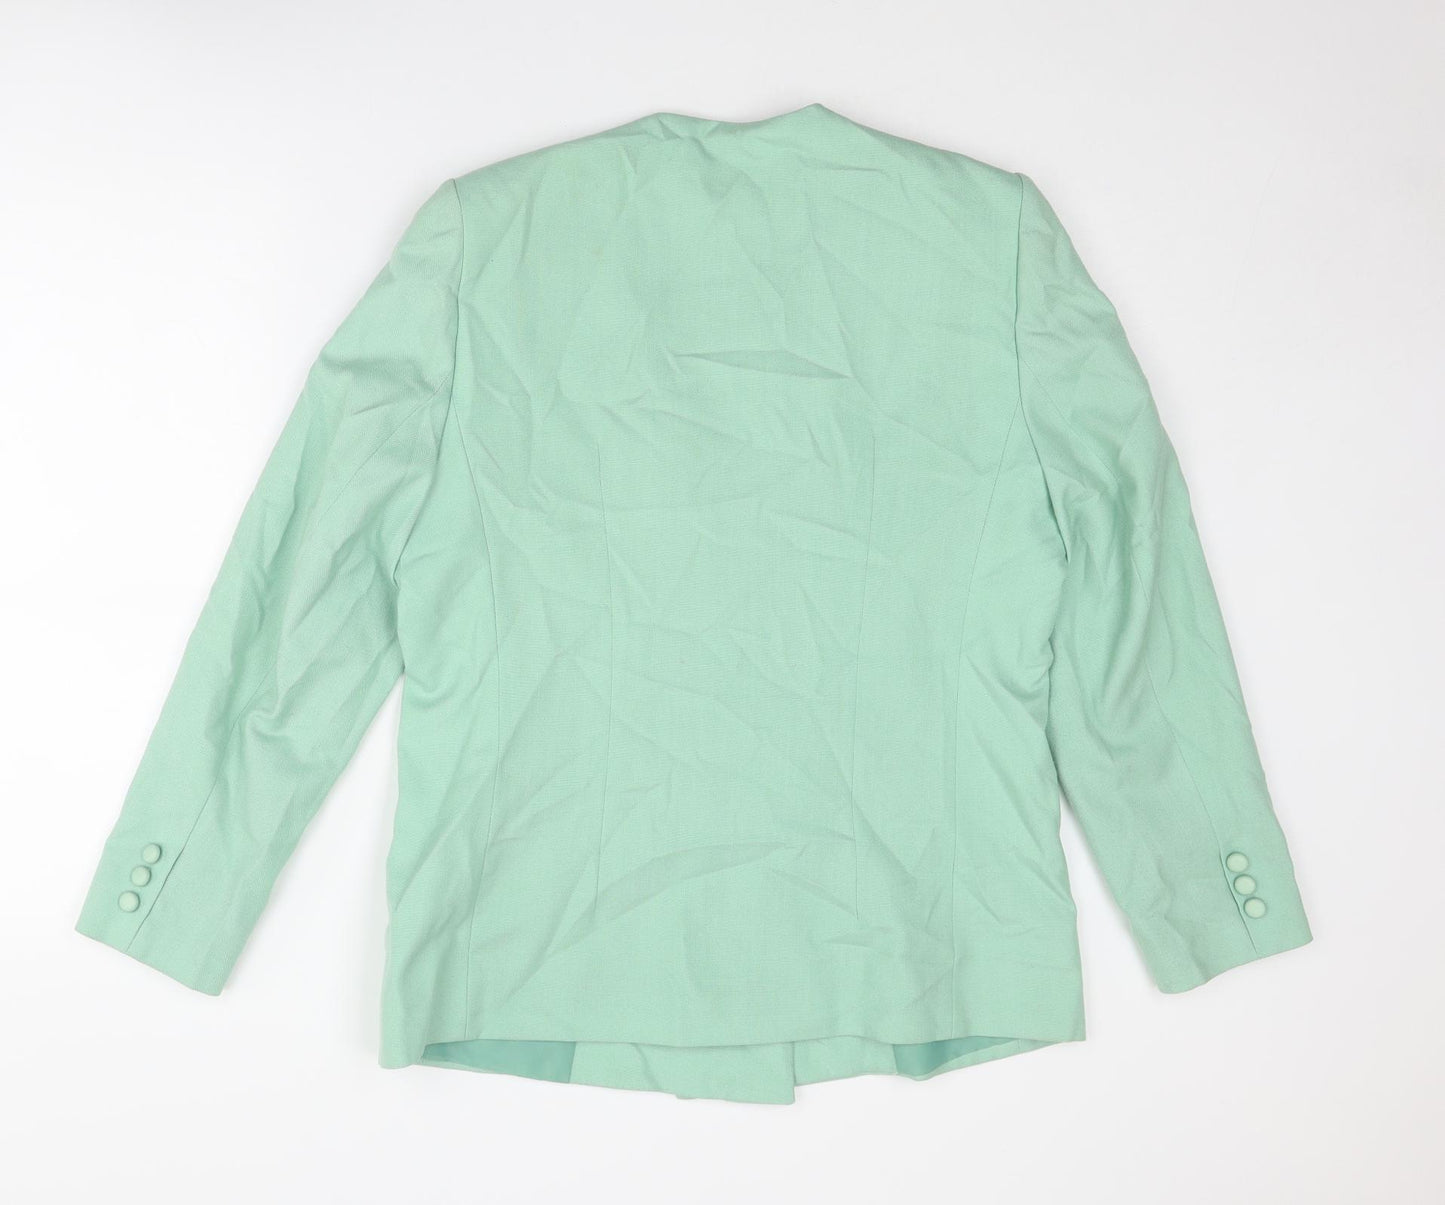 Alexon Womens Green Jacket Blazer Size 16 Button